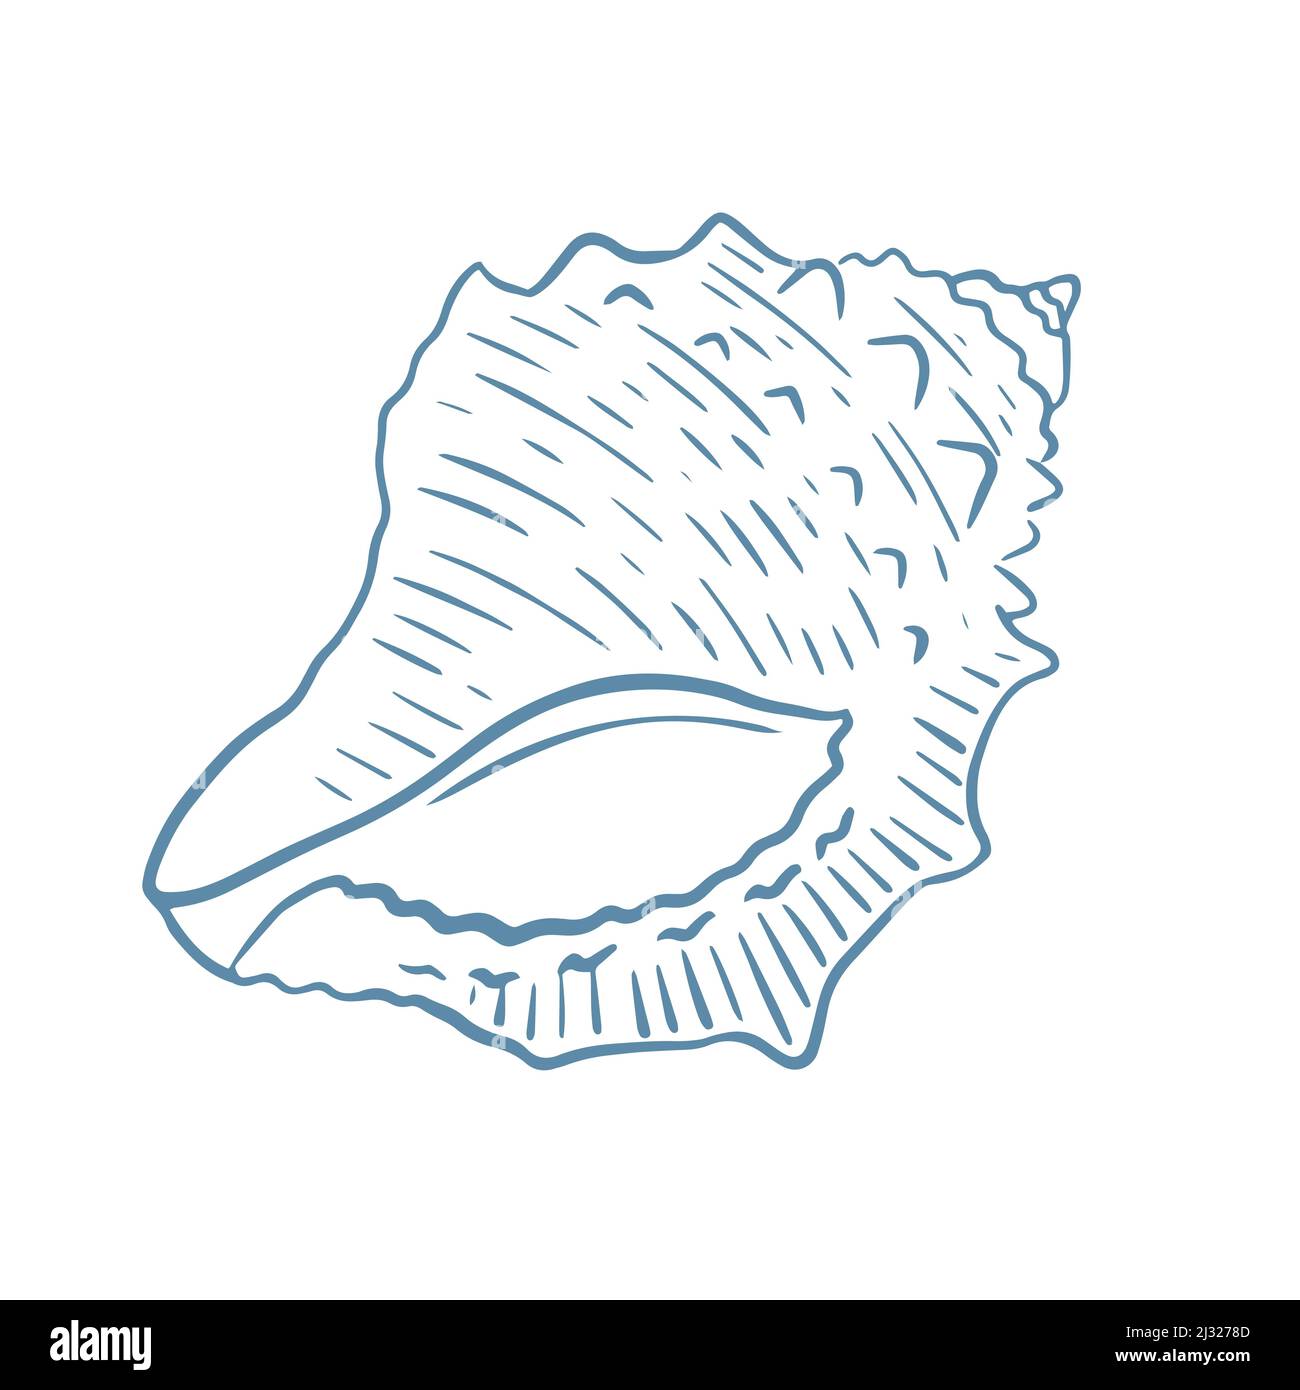 Meeresmuschel handgezeichnete Gravur Vektor-Illustration. Skizzieren Sie einzelne ozeanische Weichtiere. Meer Unterwasser Bewohner isoliertes Objekt Stock Vektor